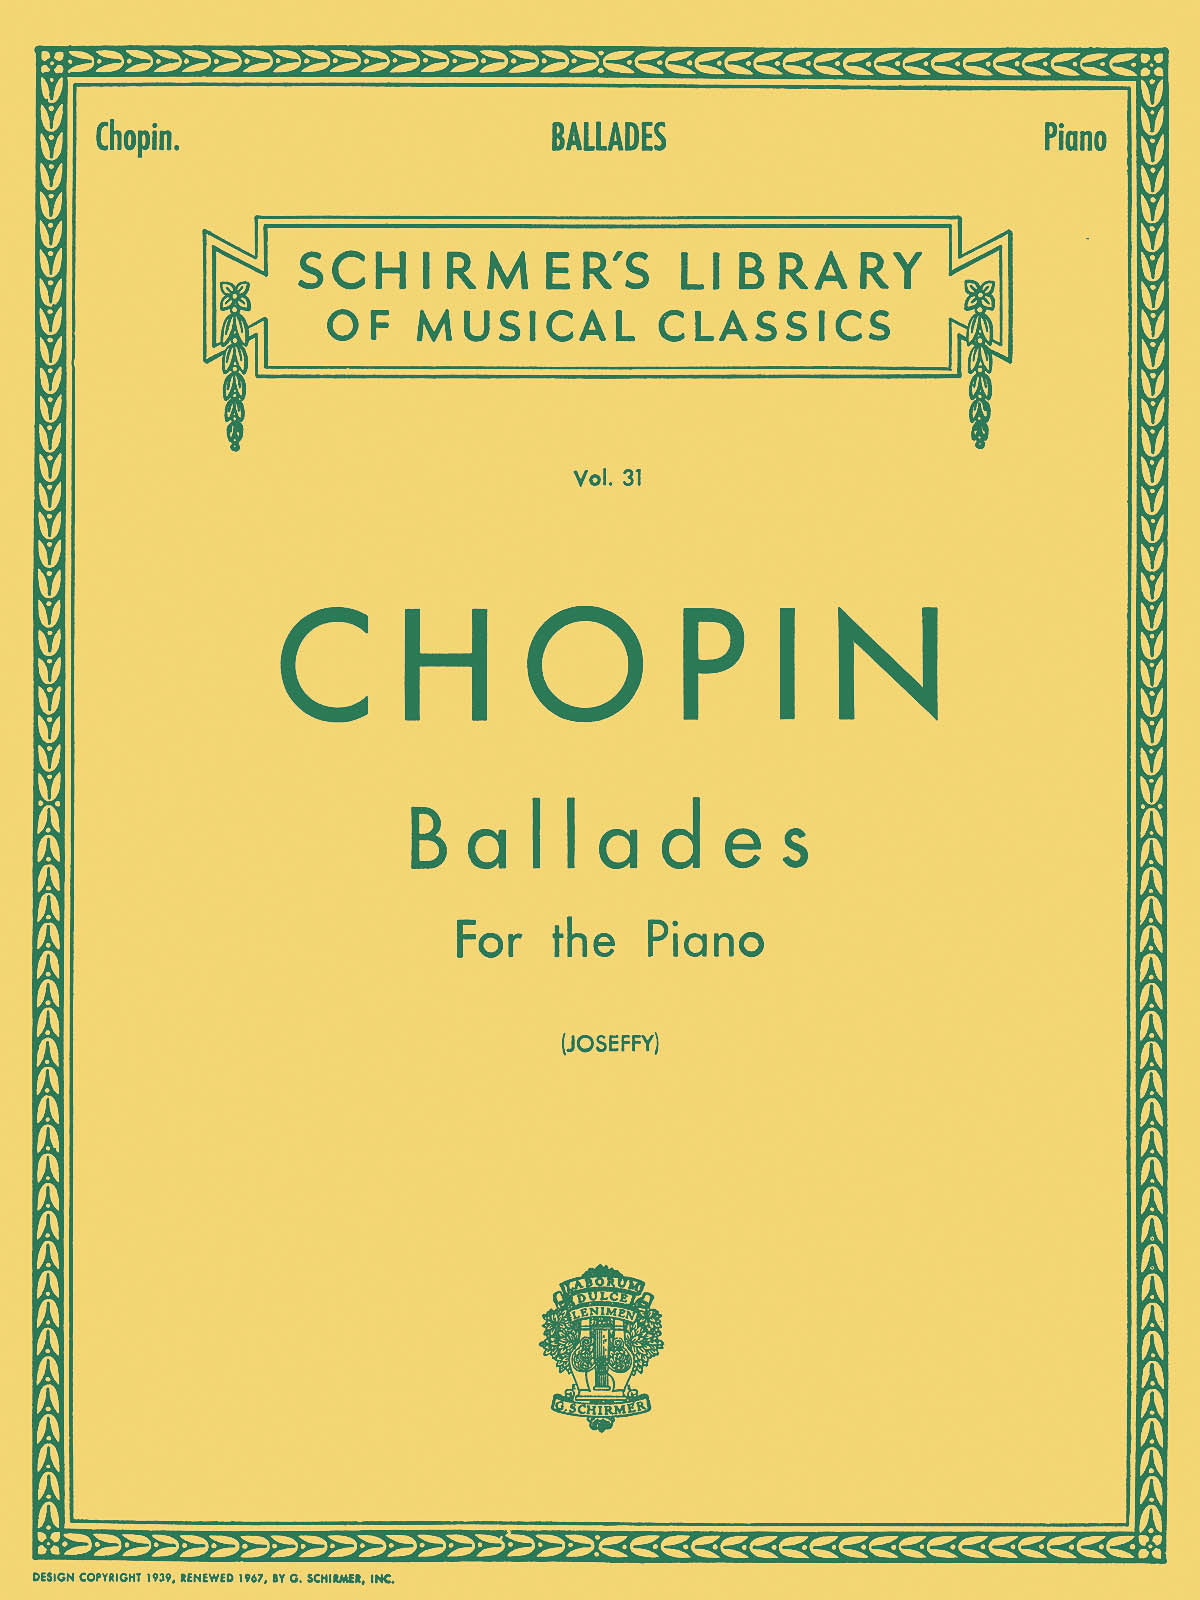 Chopin Ballades Vol. 31